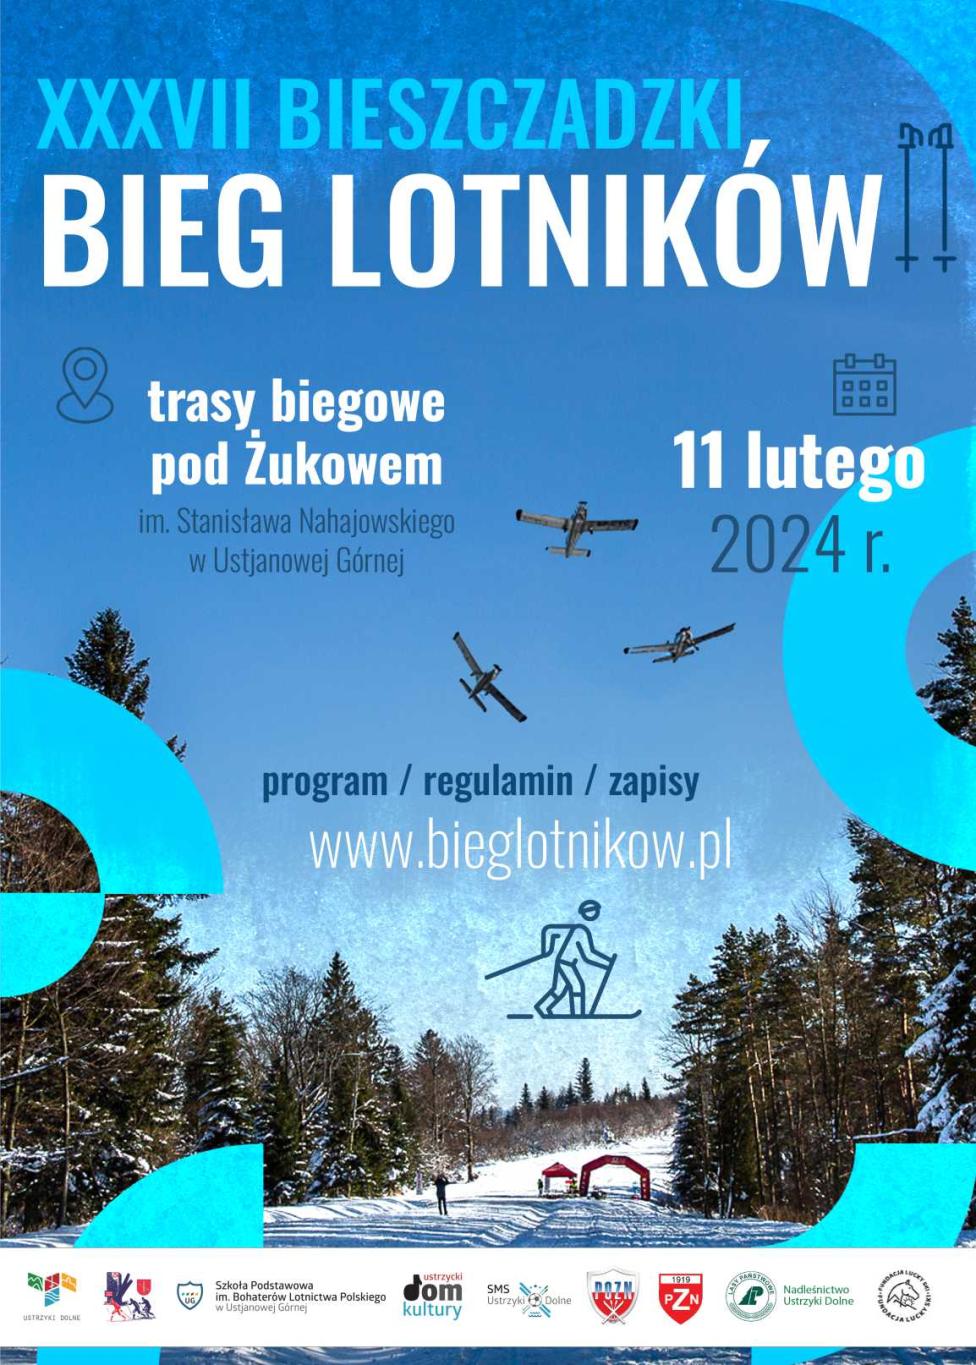 XXXVII Bieszczadzki Bieg Lotników - plakat (fot. bieglotnikow.pl)